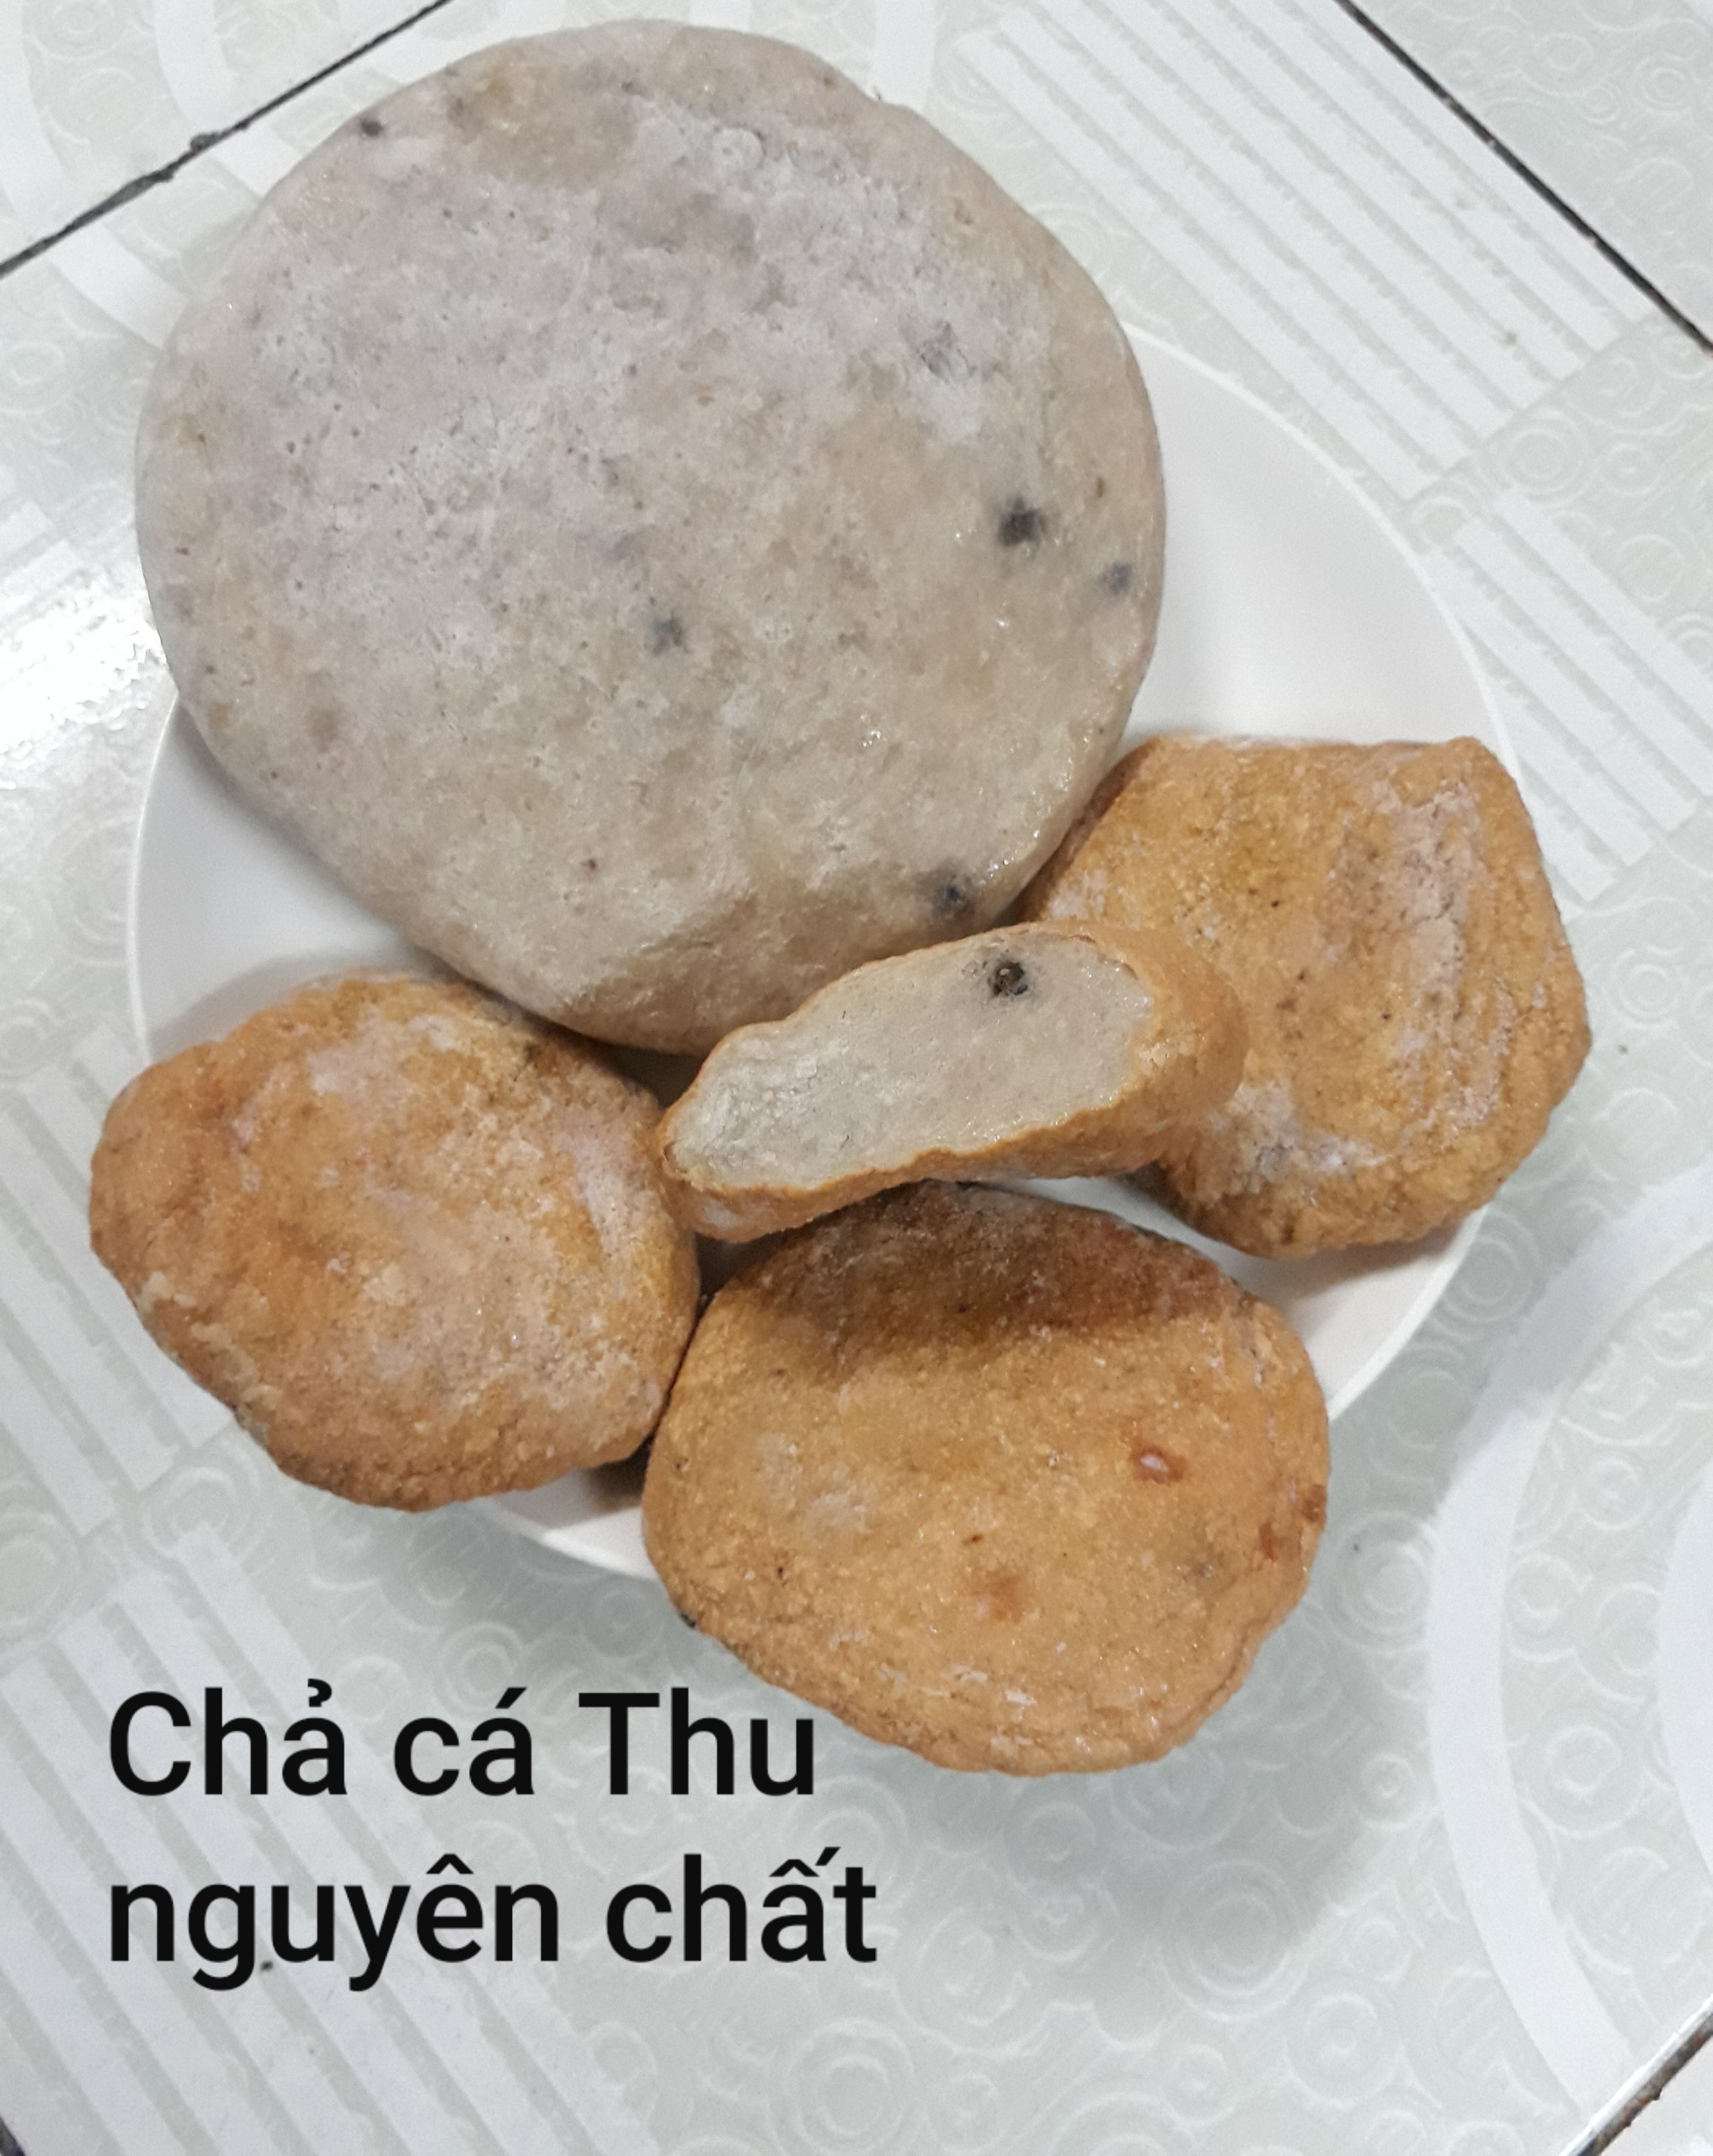 Chả Cá Thu nguyên chất - Sài Thanh Food - Công TY TNHH TM DV Sản Xuất Sài Thanh